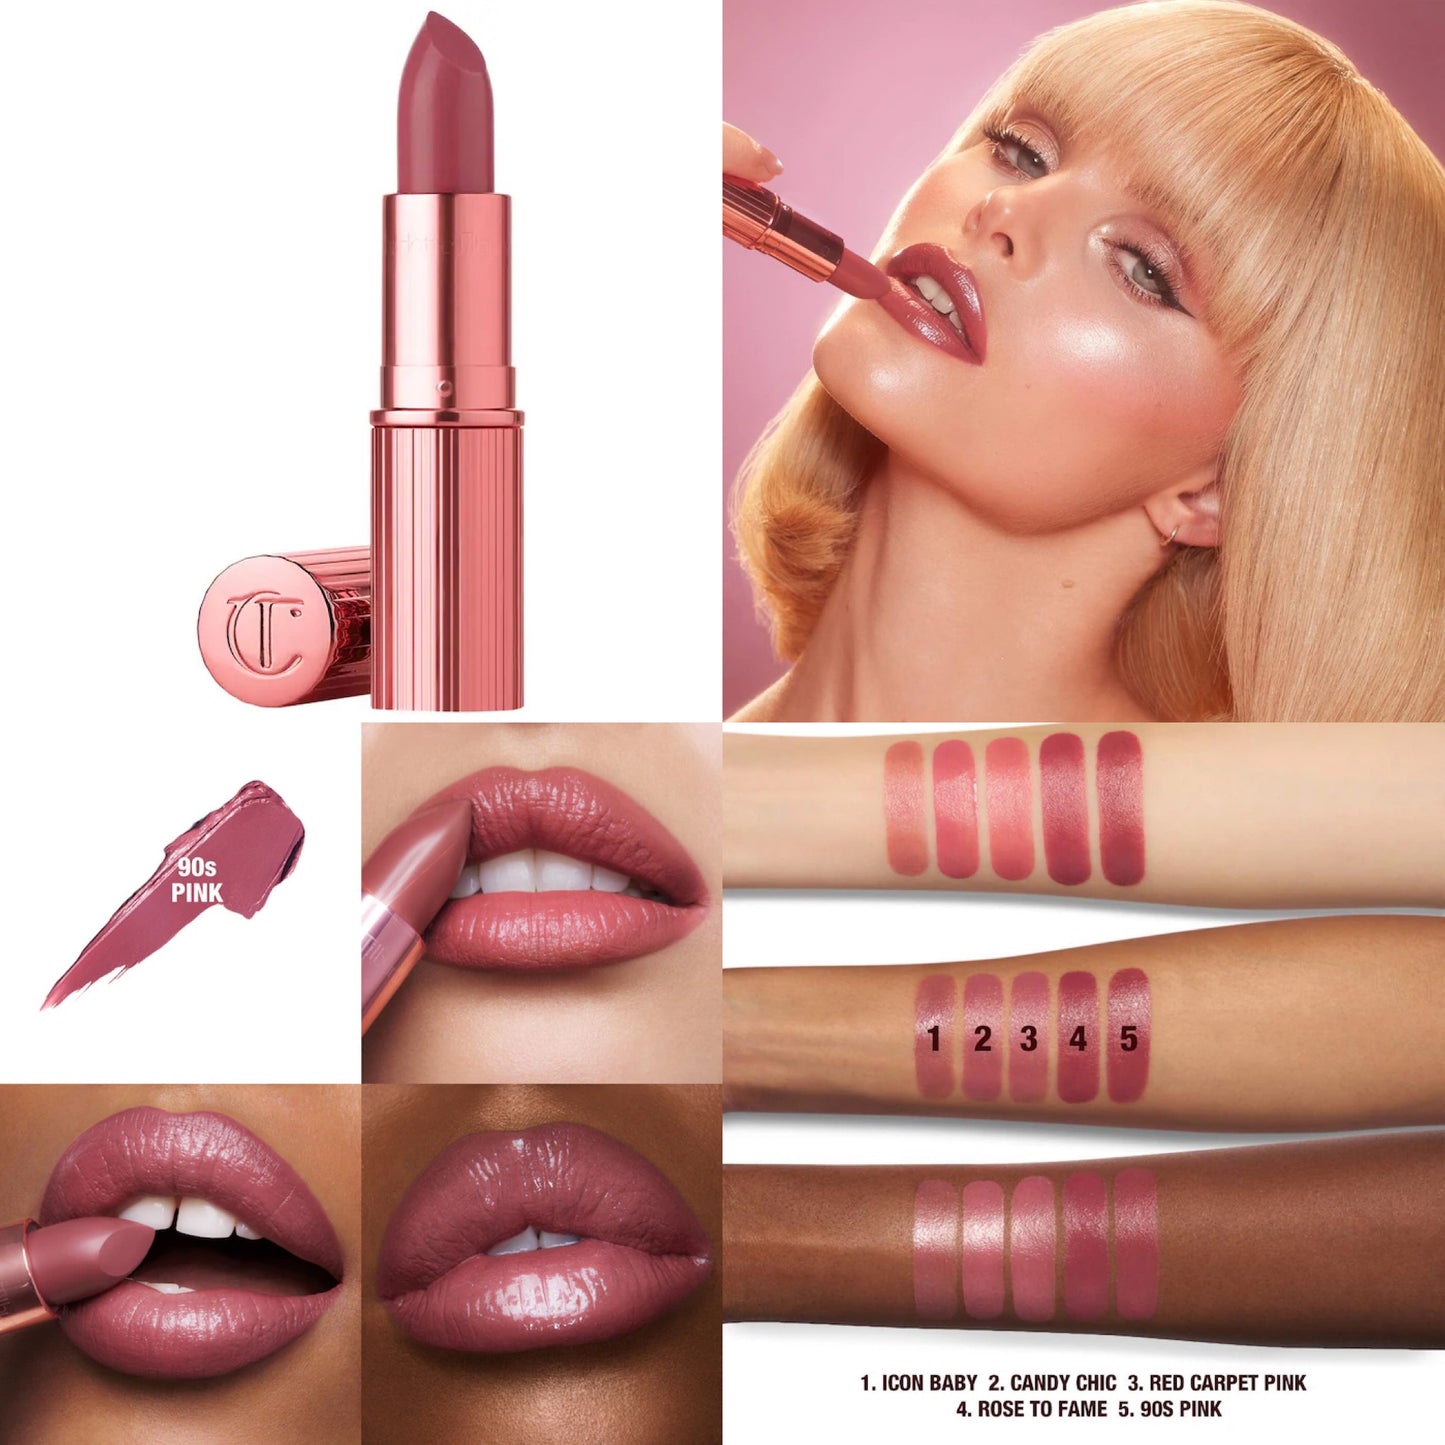 Charlotte Tilbury, K.I.S.S.I.N.G Satin Shine Lipstick